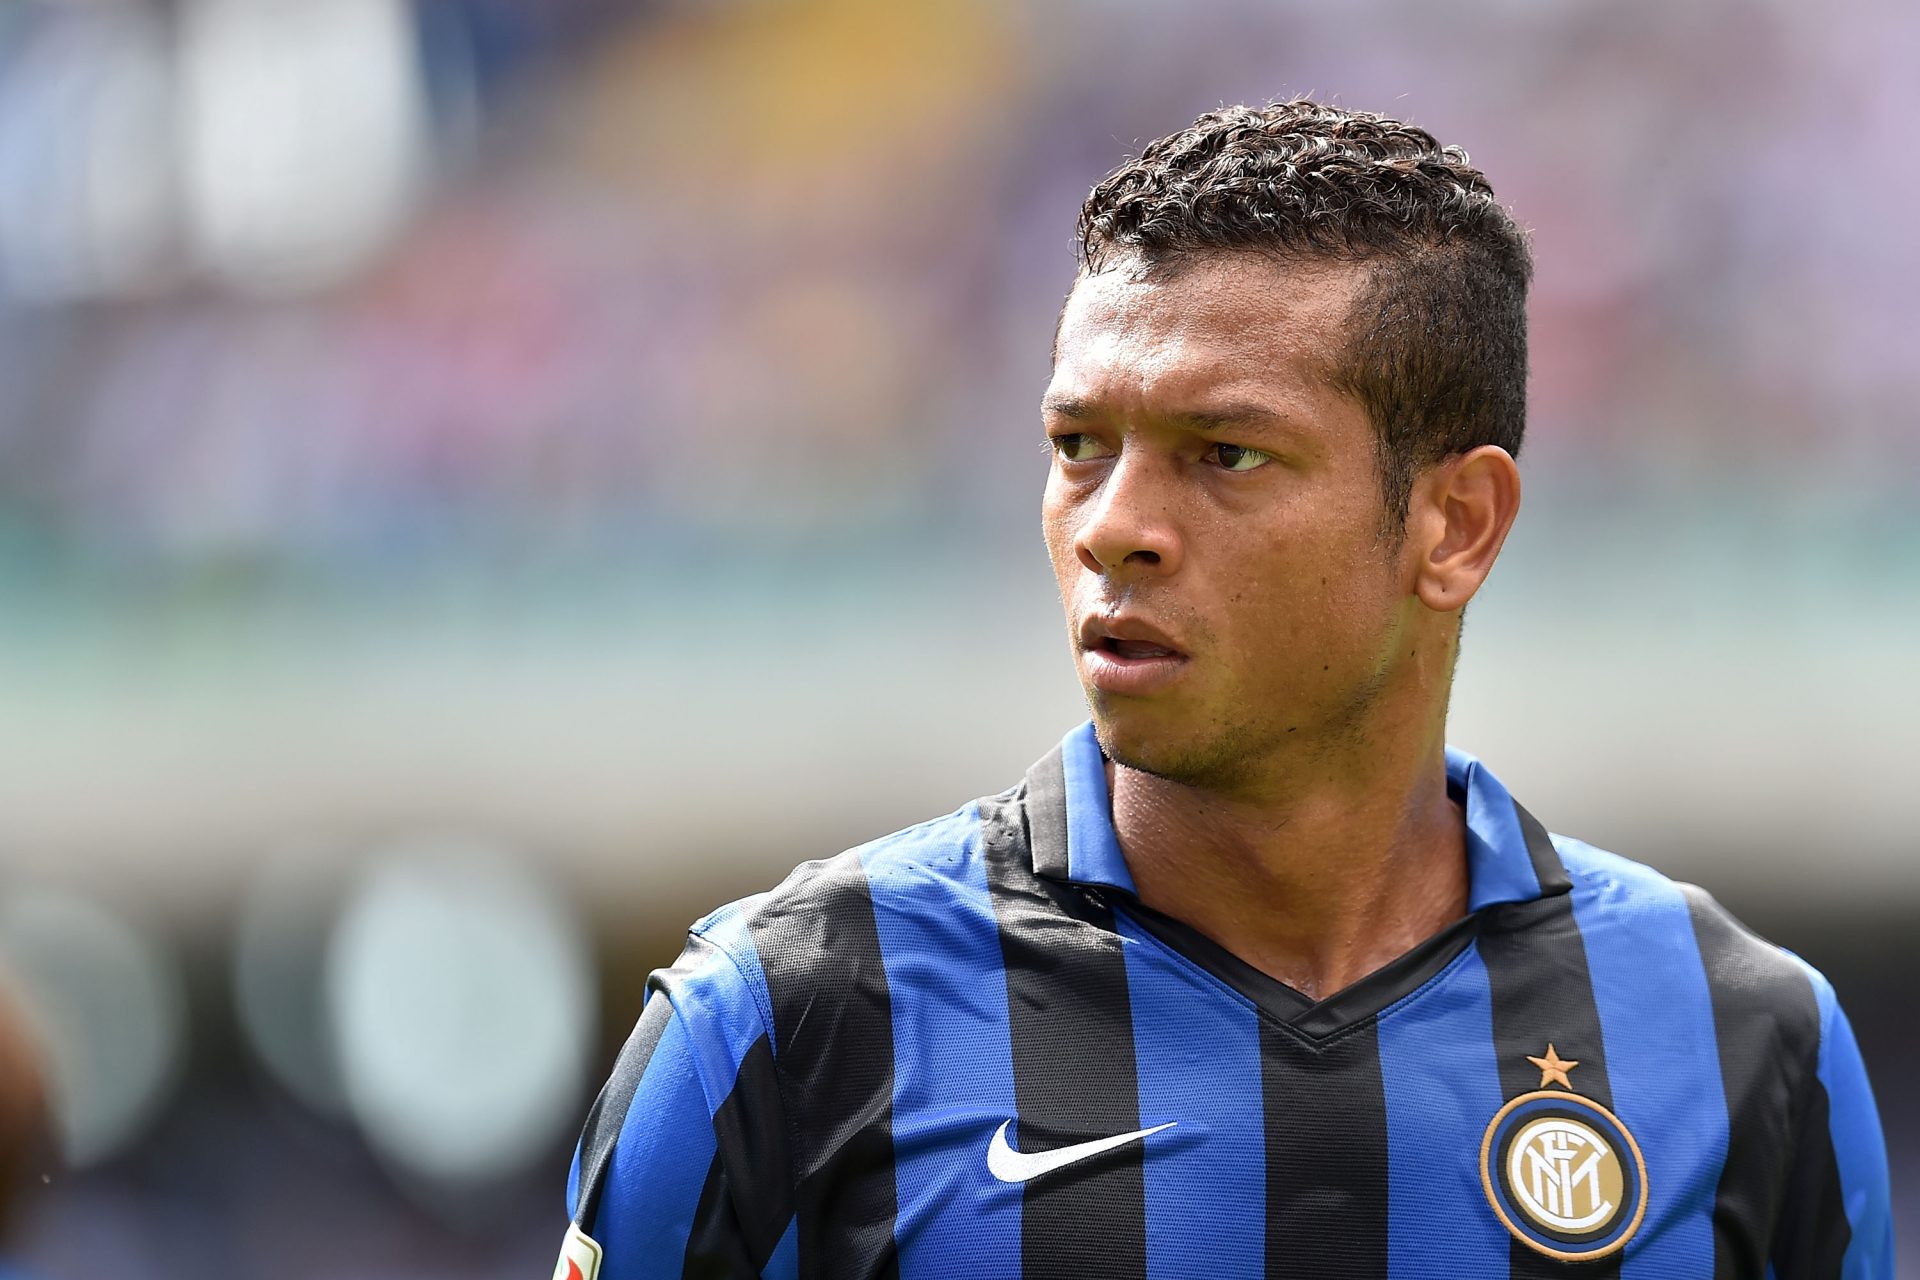 La sconcertante rivelazione dell'ex capitano dell'Inter che ha sconvolto il mondo del calcio